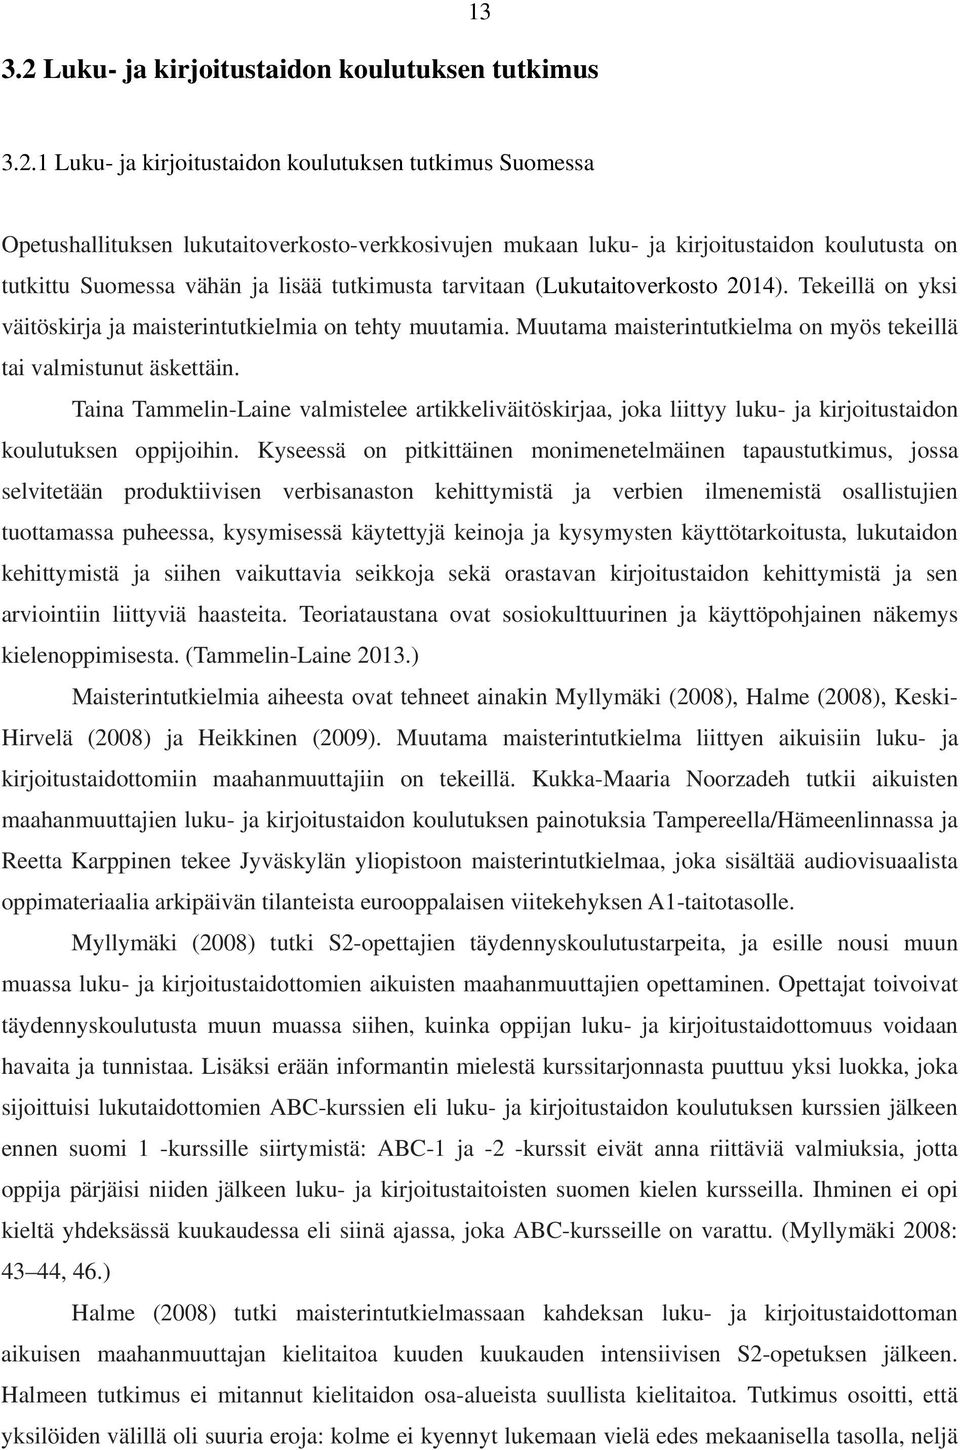 1 Luku- ja kirjoitustaidon koulutuksen tutkimus Suomessa Opetushallituksen lukutaitoverkosto-verkkosivujen mukaan luku- ja kirjoitustaidon koulutusta on tutkittu Suomessa vähän ja lisää tutkimusta